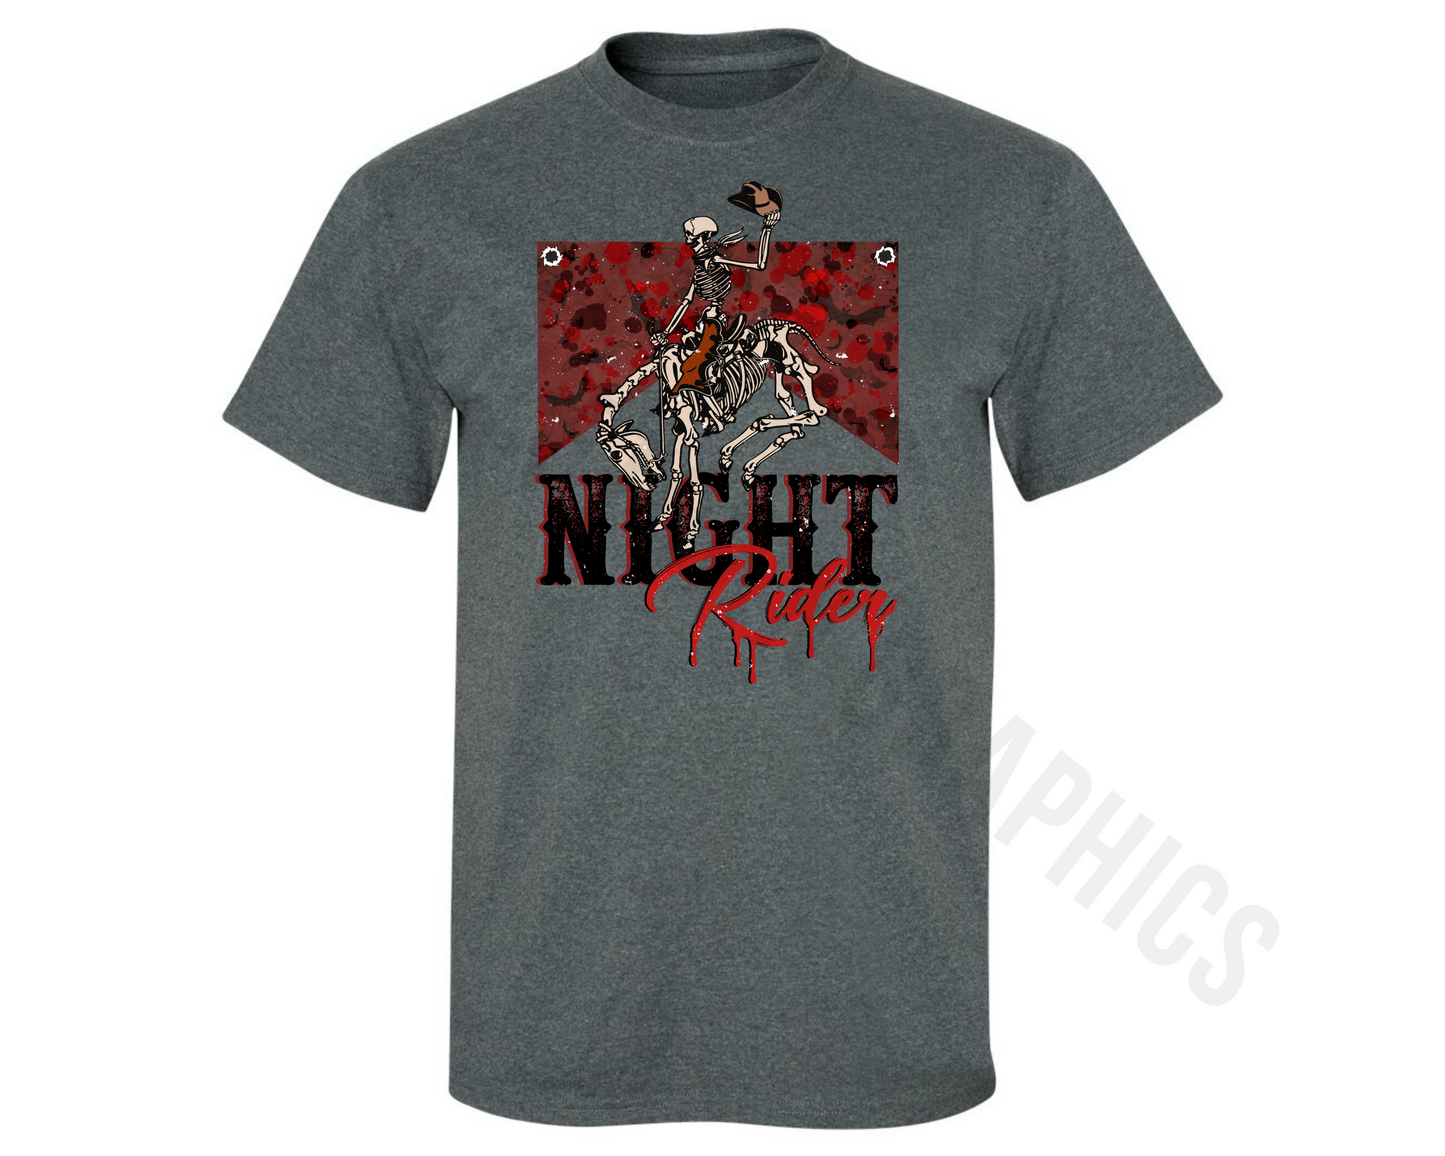 Night Rider T-Shirt